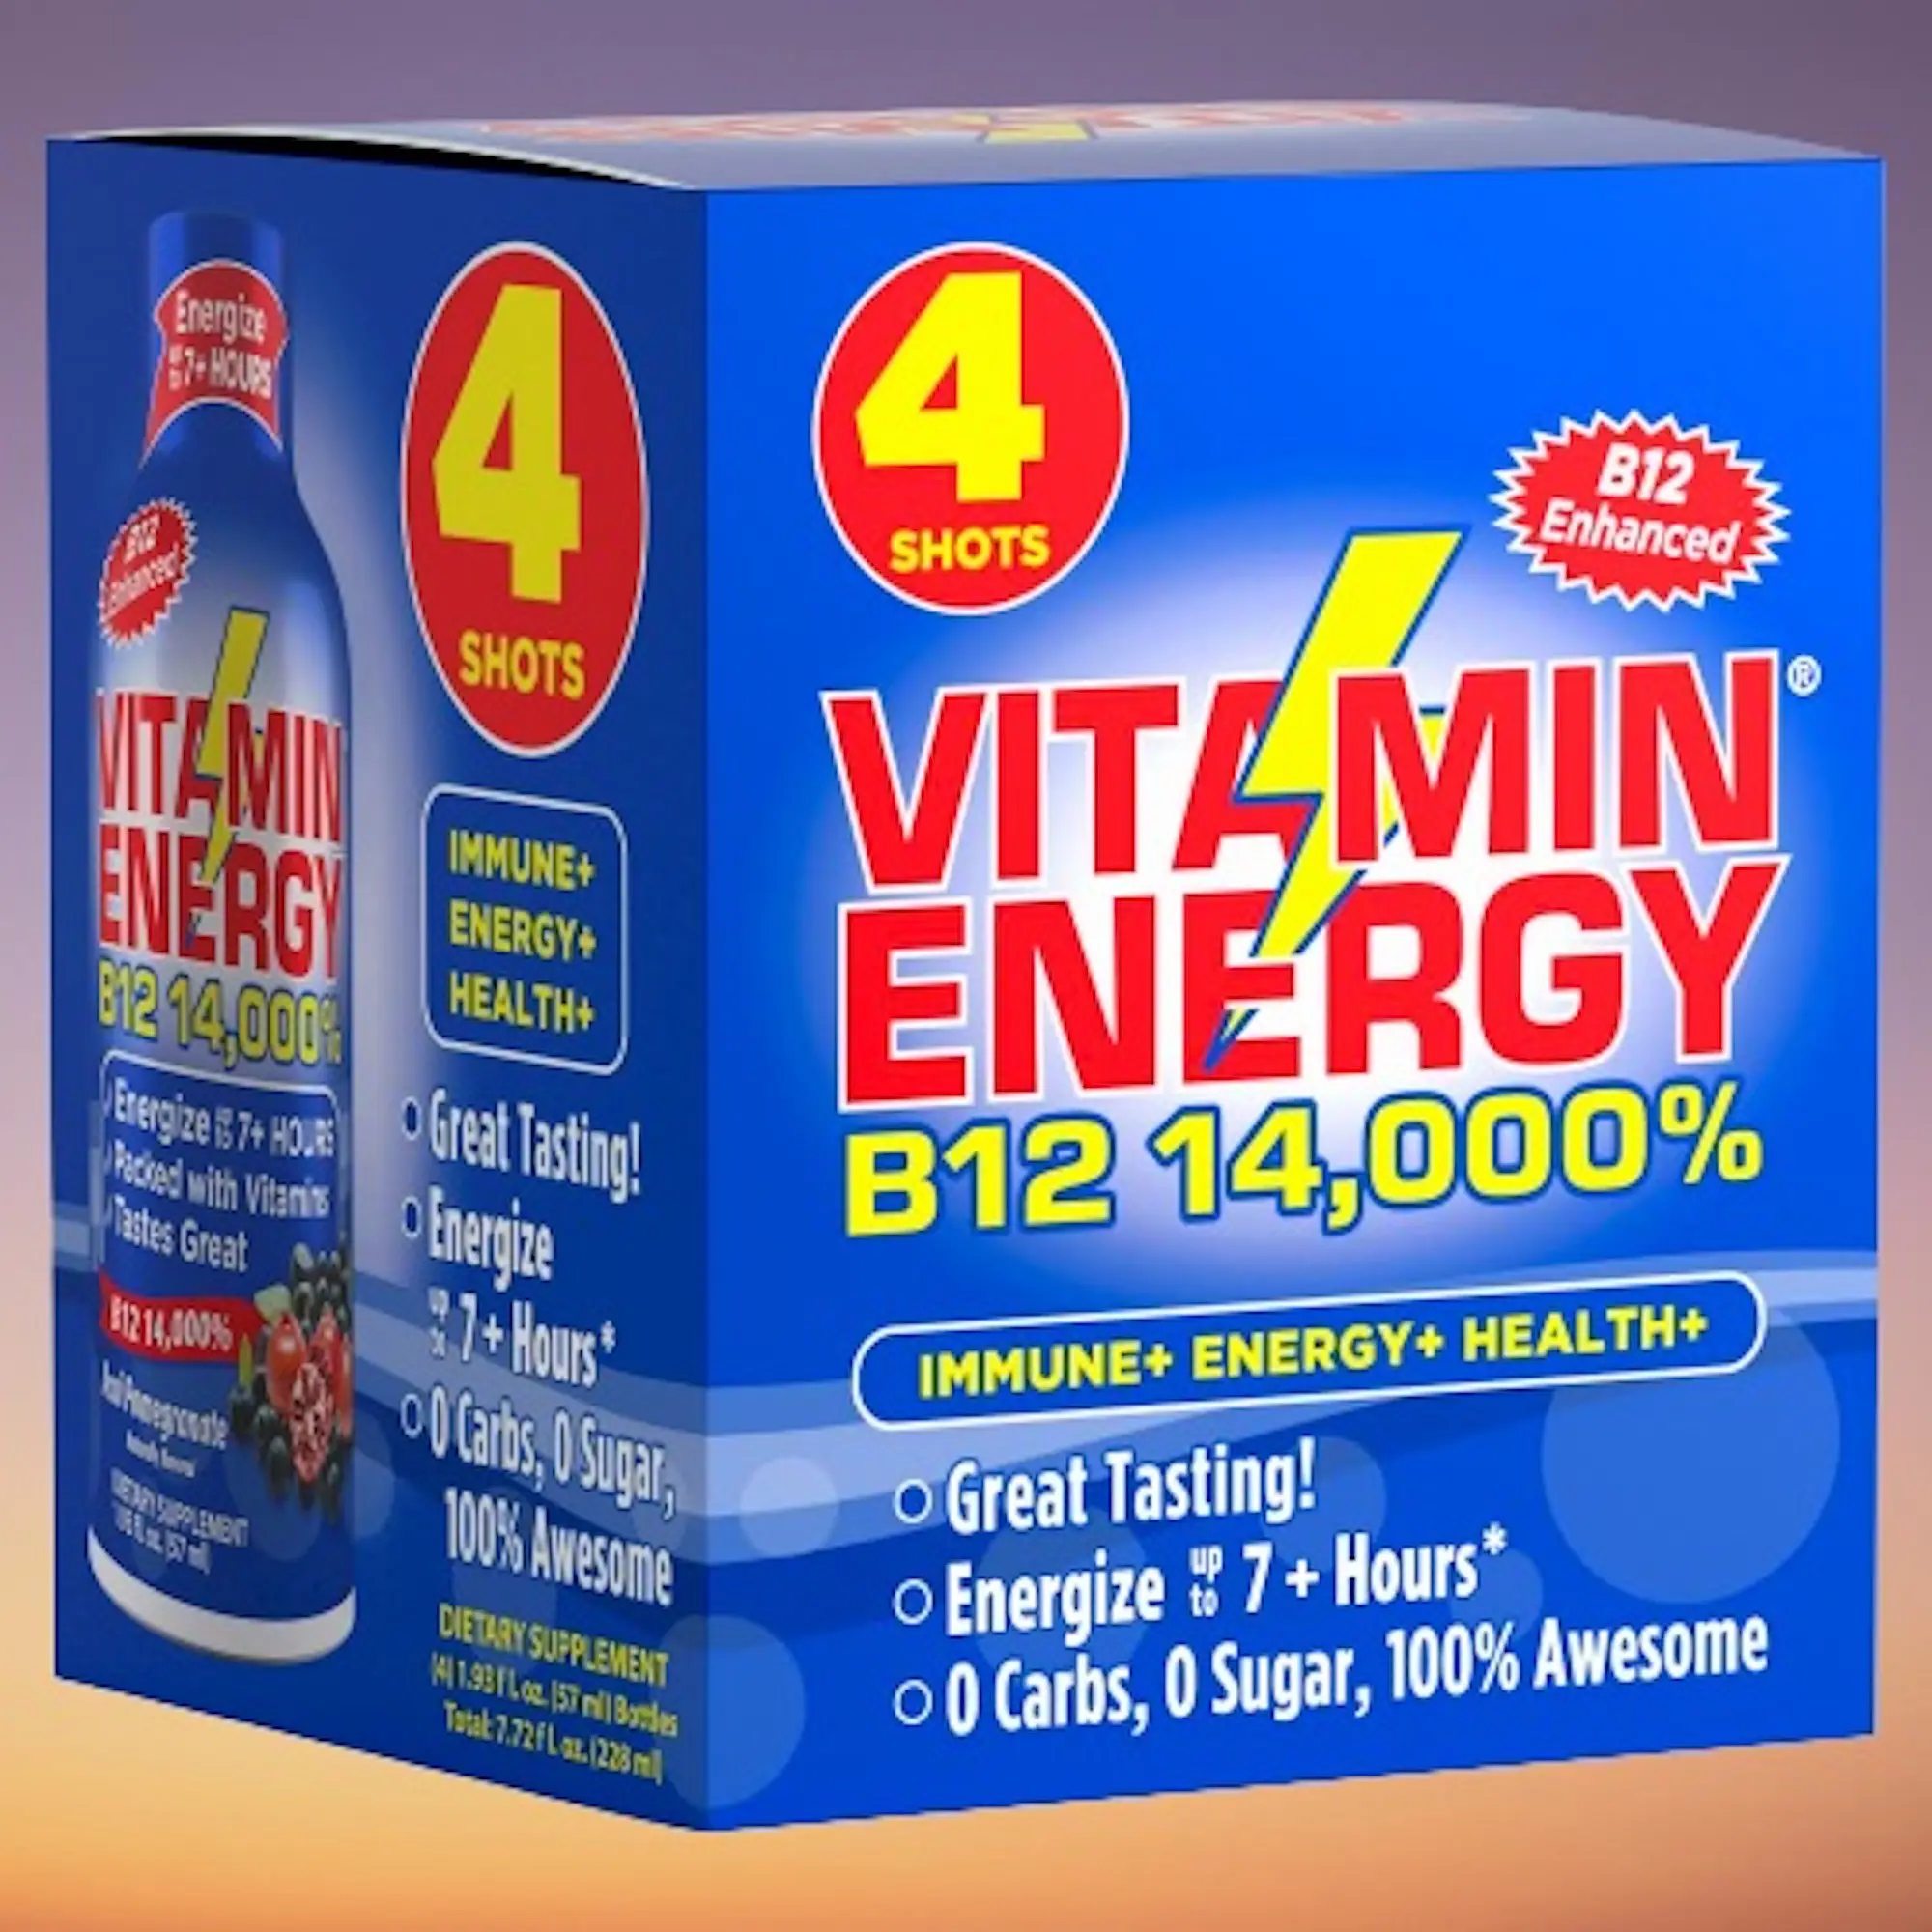 Acia POM Vitamin Energi Vitamin B12 Suplemen Diet Jepretan-Energi Tahan Hingga 7 + Jam Keto 0 Gula, 0 Karburator